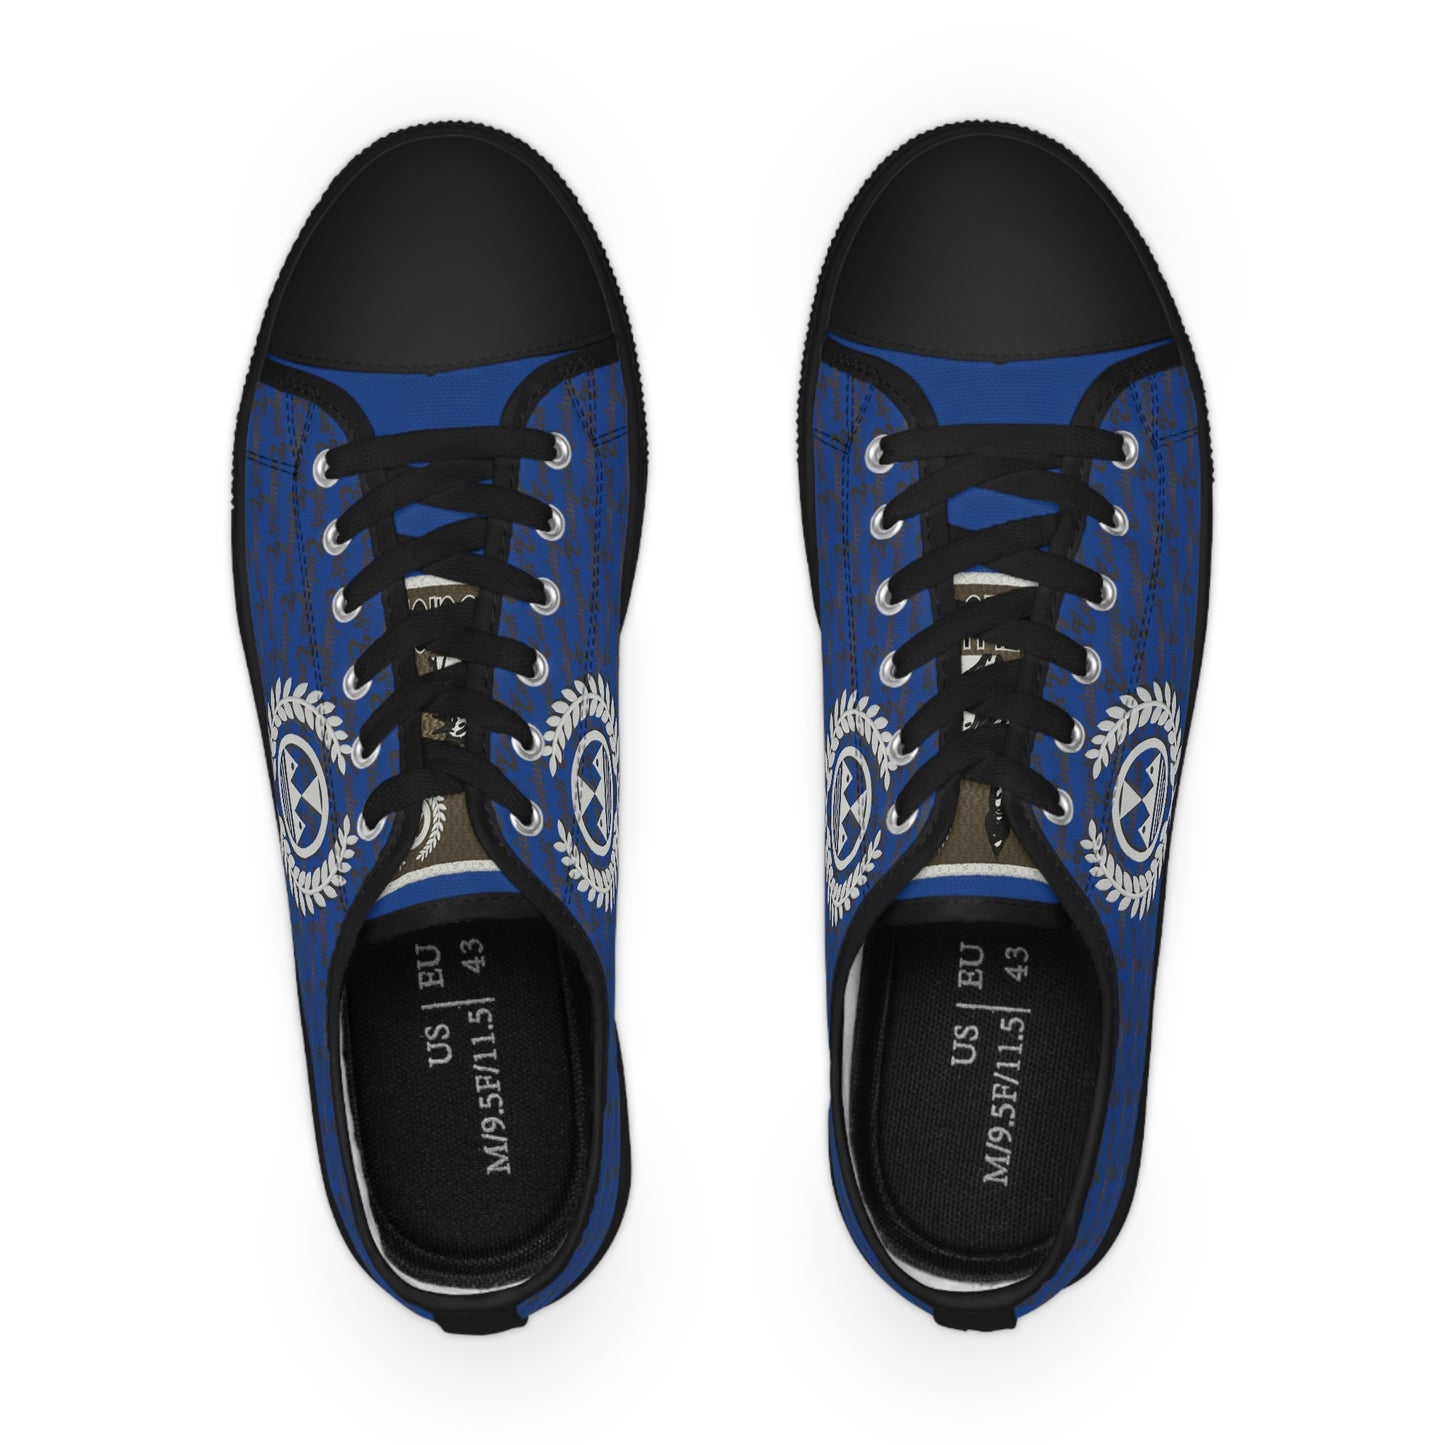 Ecelugich Blue Men's Low Top Sneakers